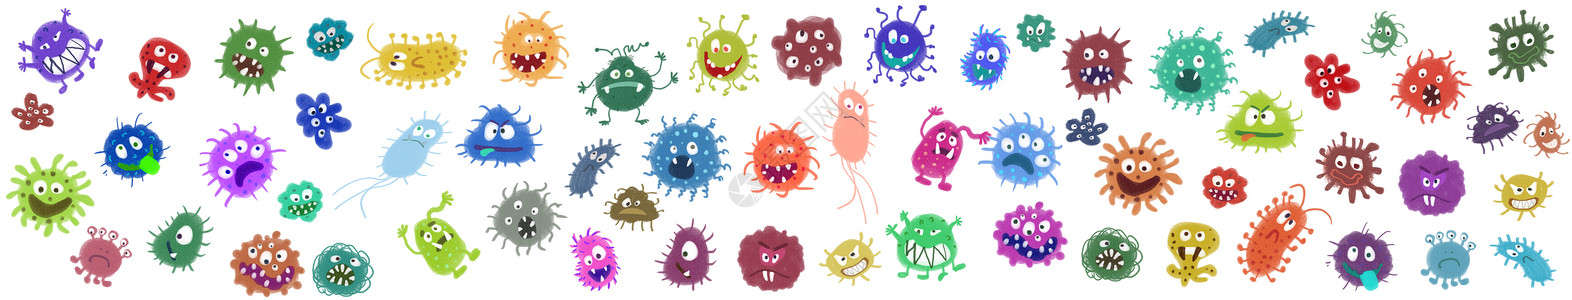 细菌病毒元素高清图片